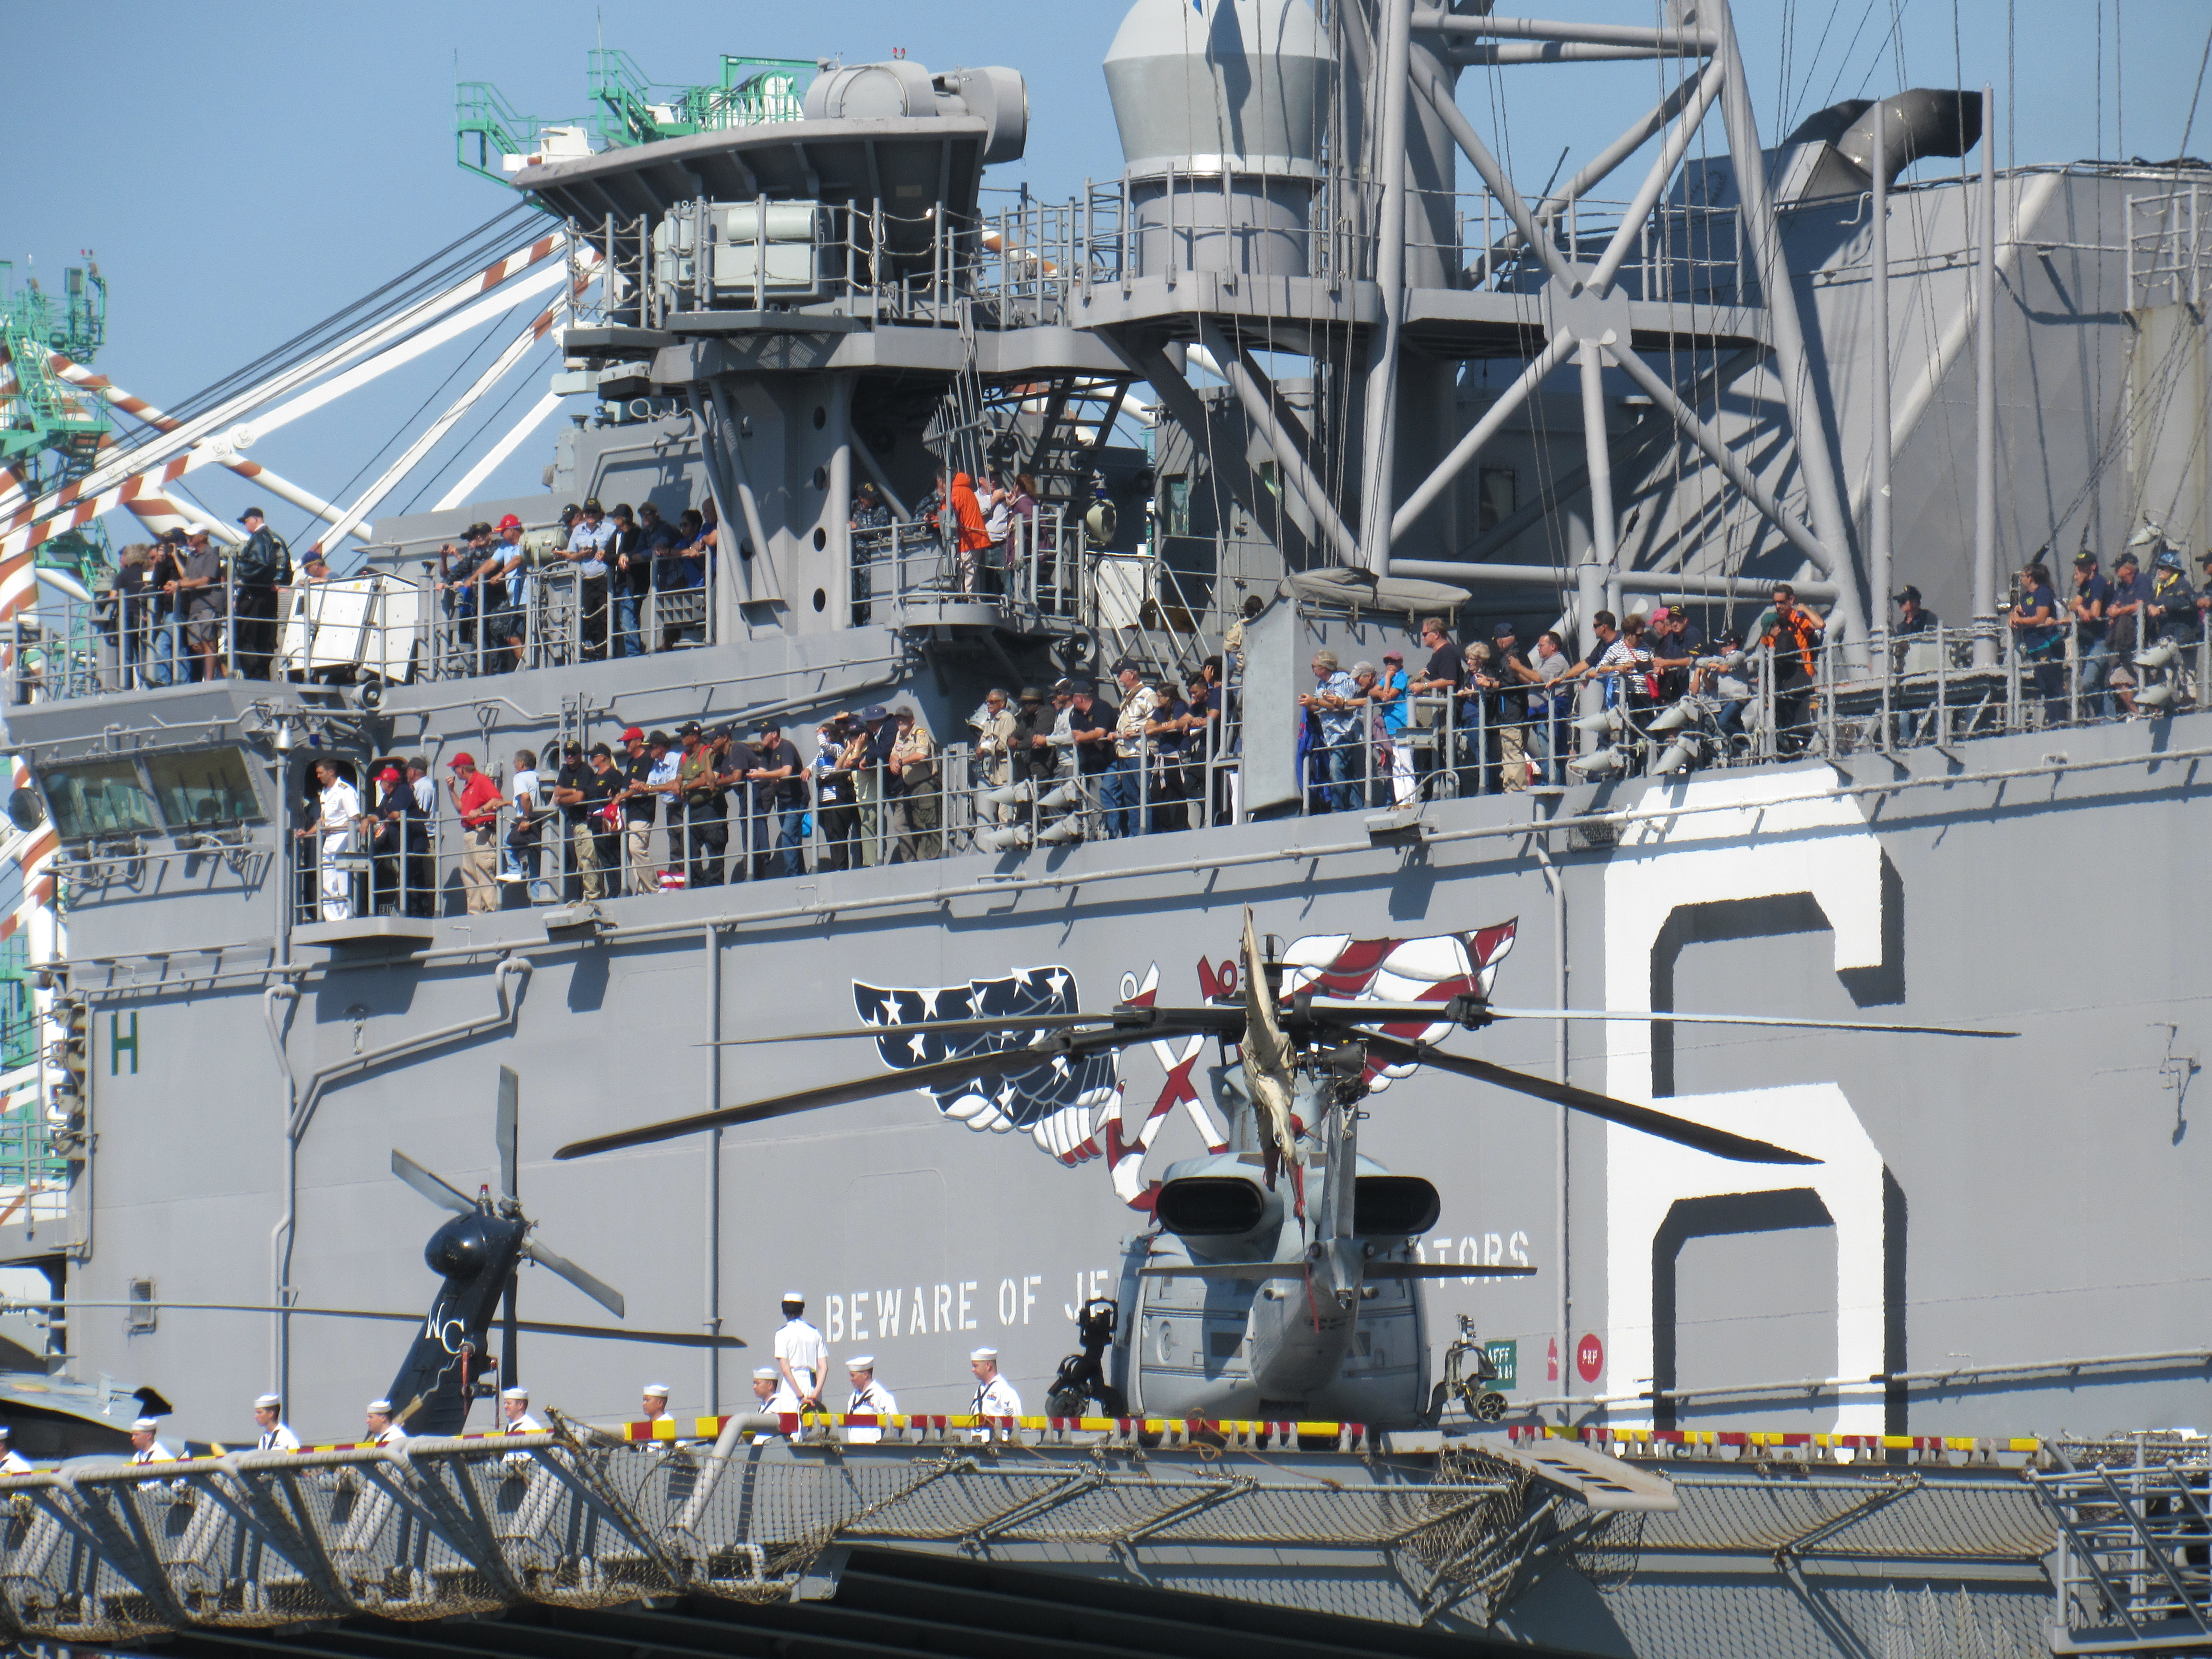 LHA 6 USS America Amphibious Assault ship arrives in Los Angeles for LA Fleet Week